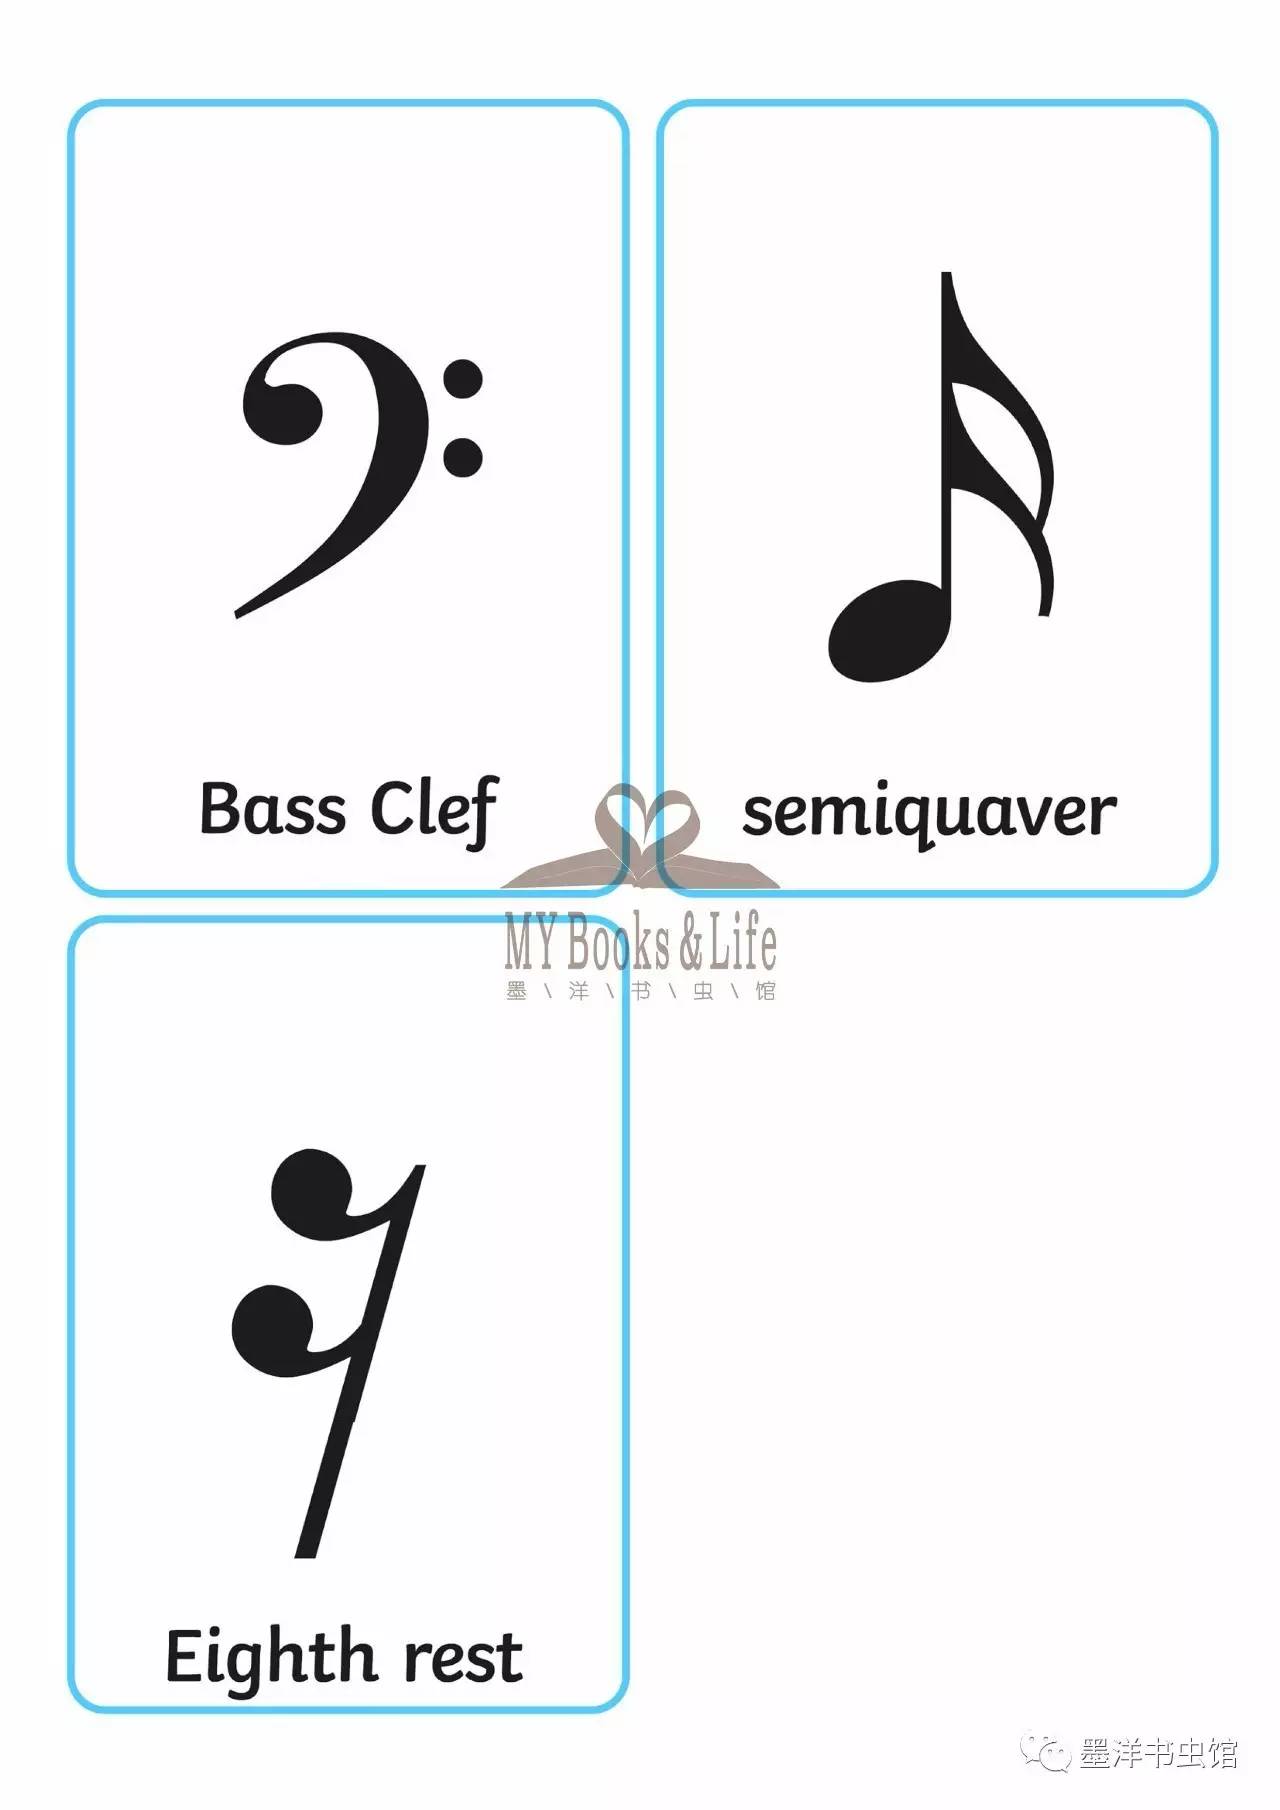 bass clef 低音谱号※ semiquaver 十六分音符※eighth rest 八分